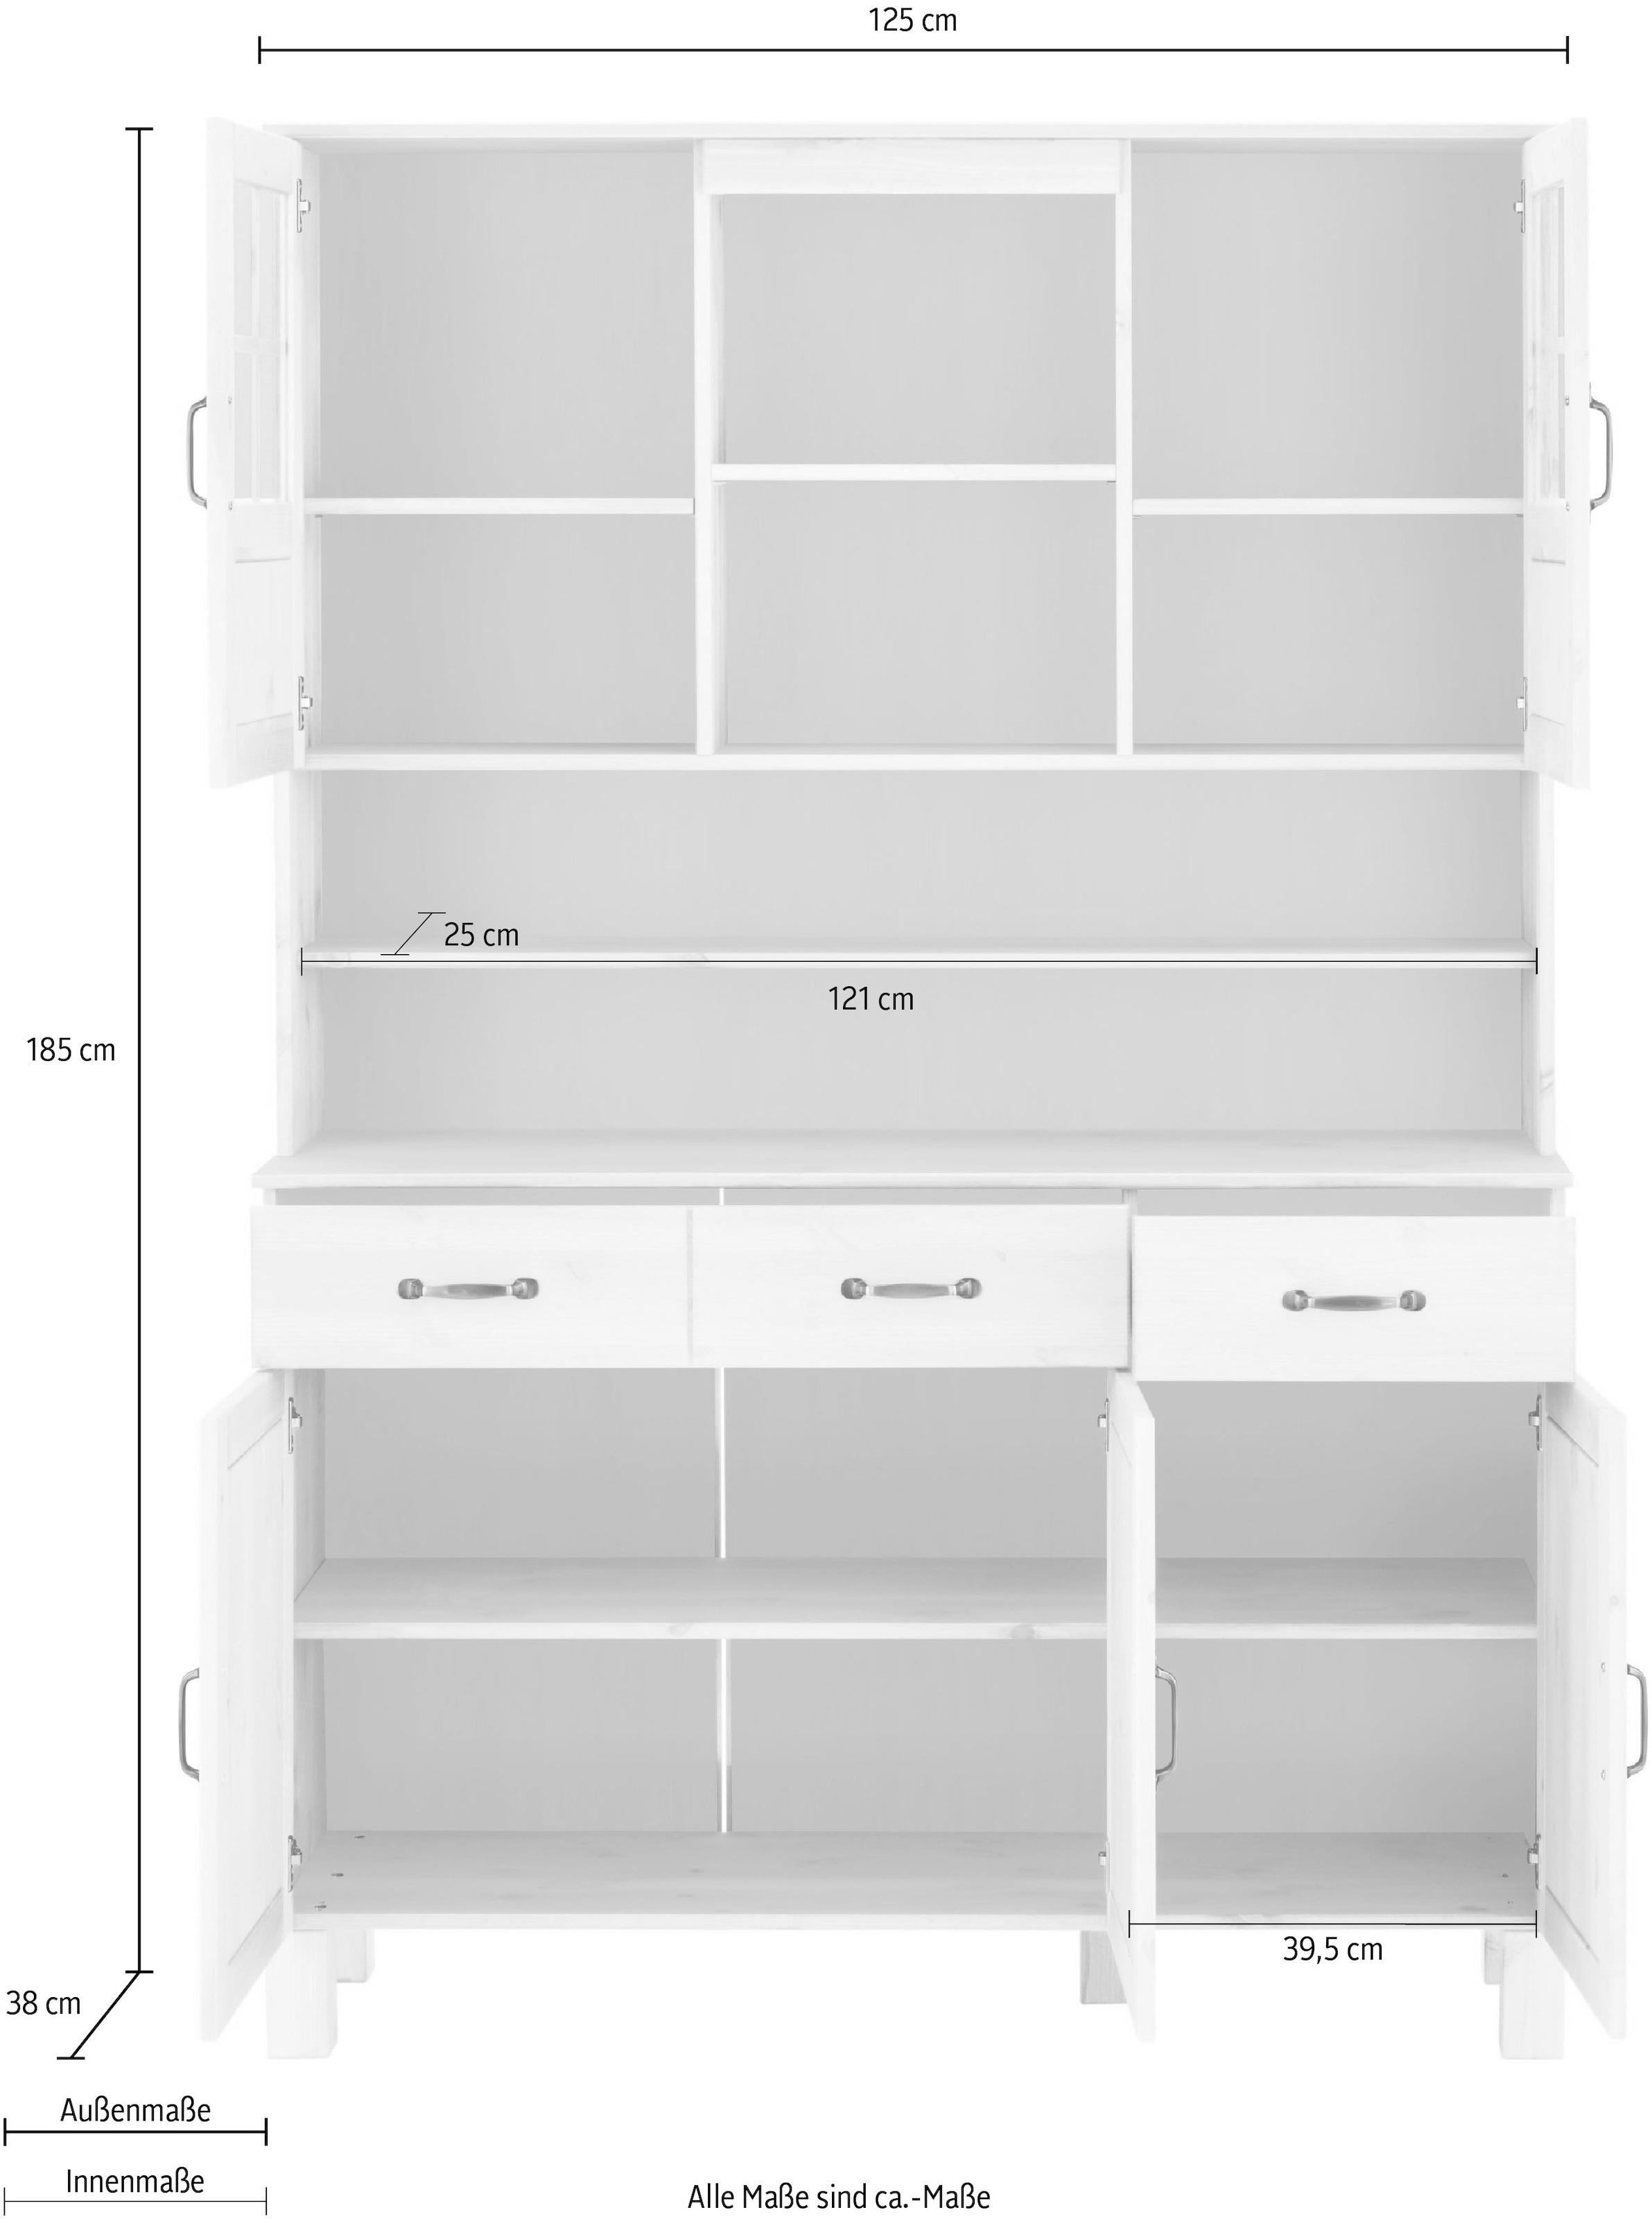 Home affaire Küchenbuffet »Alby«, Breite 125 cm, 2 Glastüren, 2 Schubladen  online kaufen | UNIVERSAL